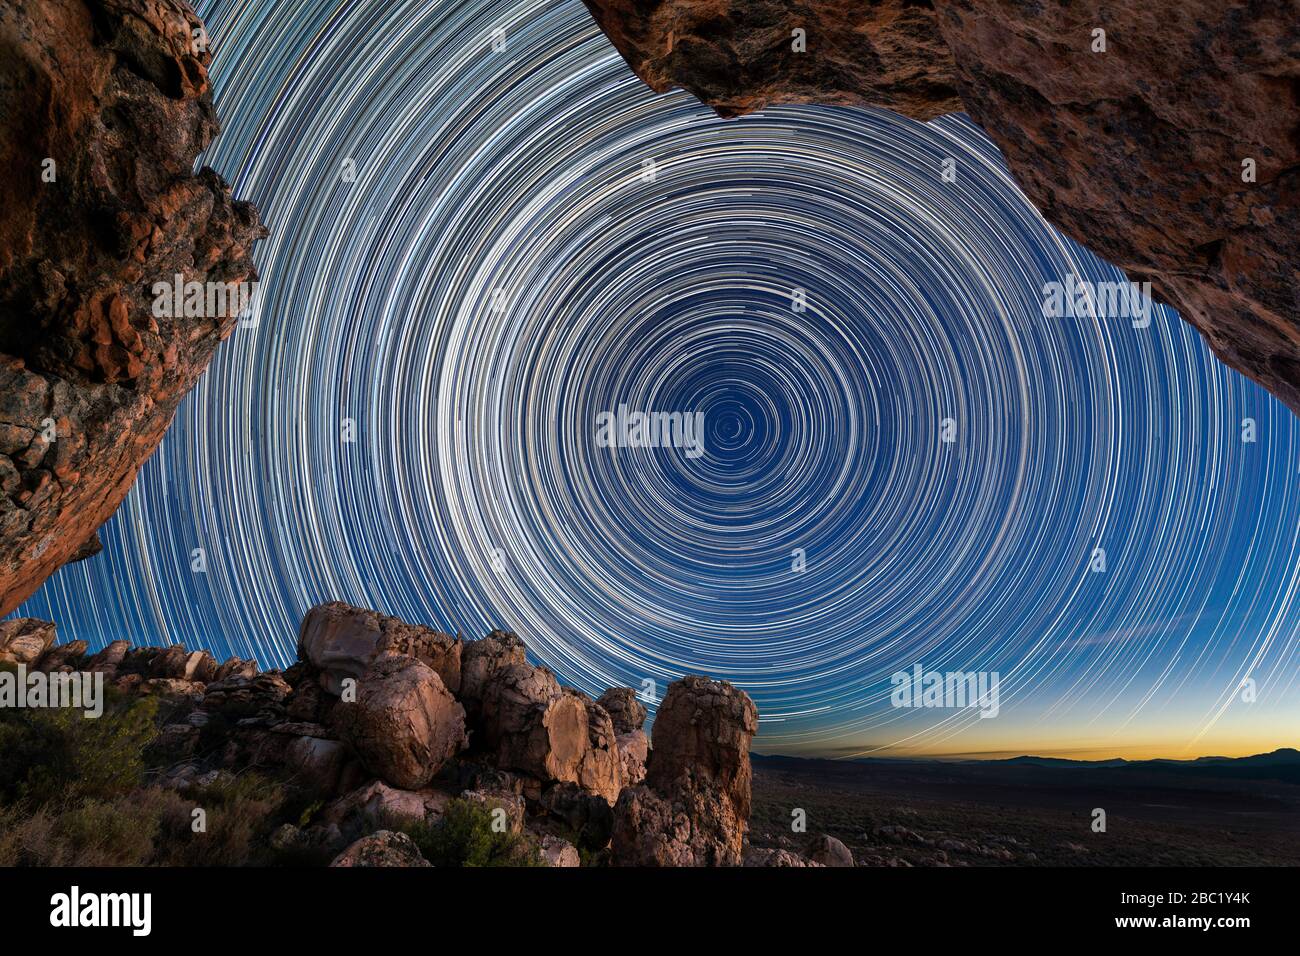 Una hermosa fotografía del cielo nocturno con senderos circulares enmarcados por espectaculares rocas en primer plano, tomadas en las montañas Cederberg en el oeste Foto de stock